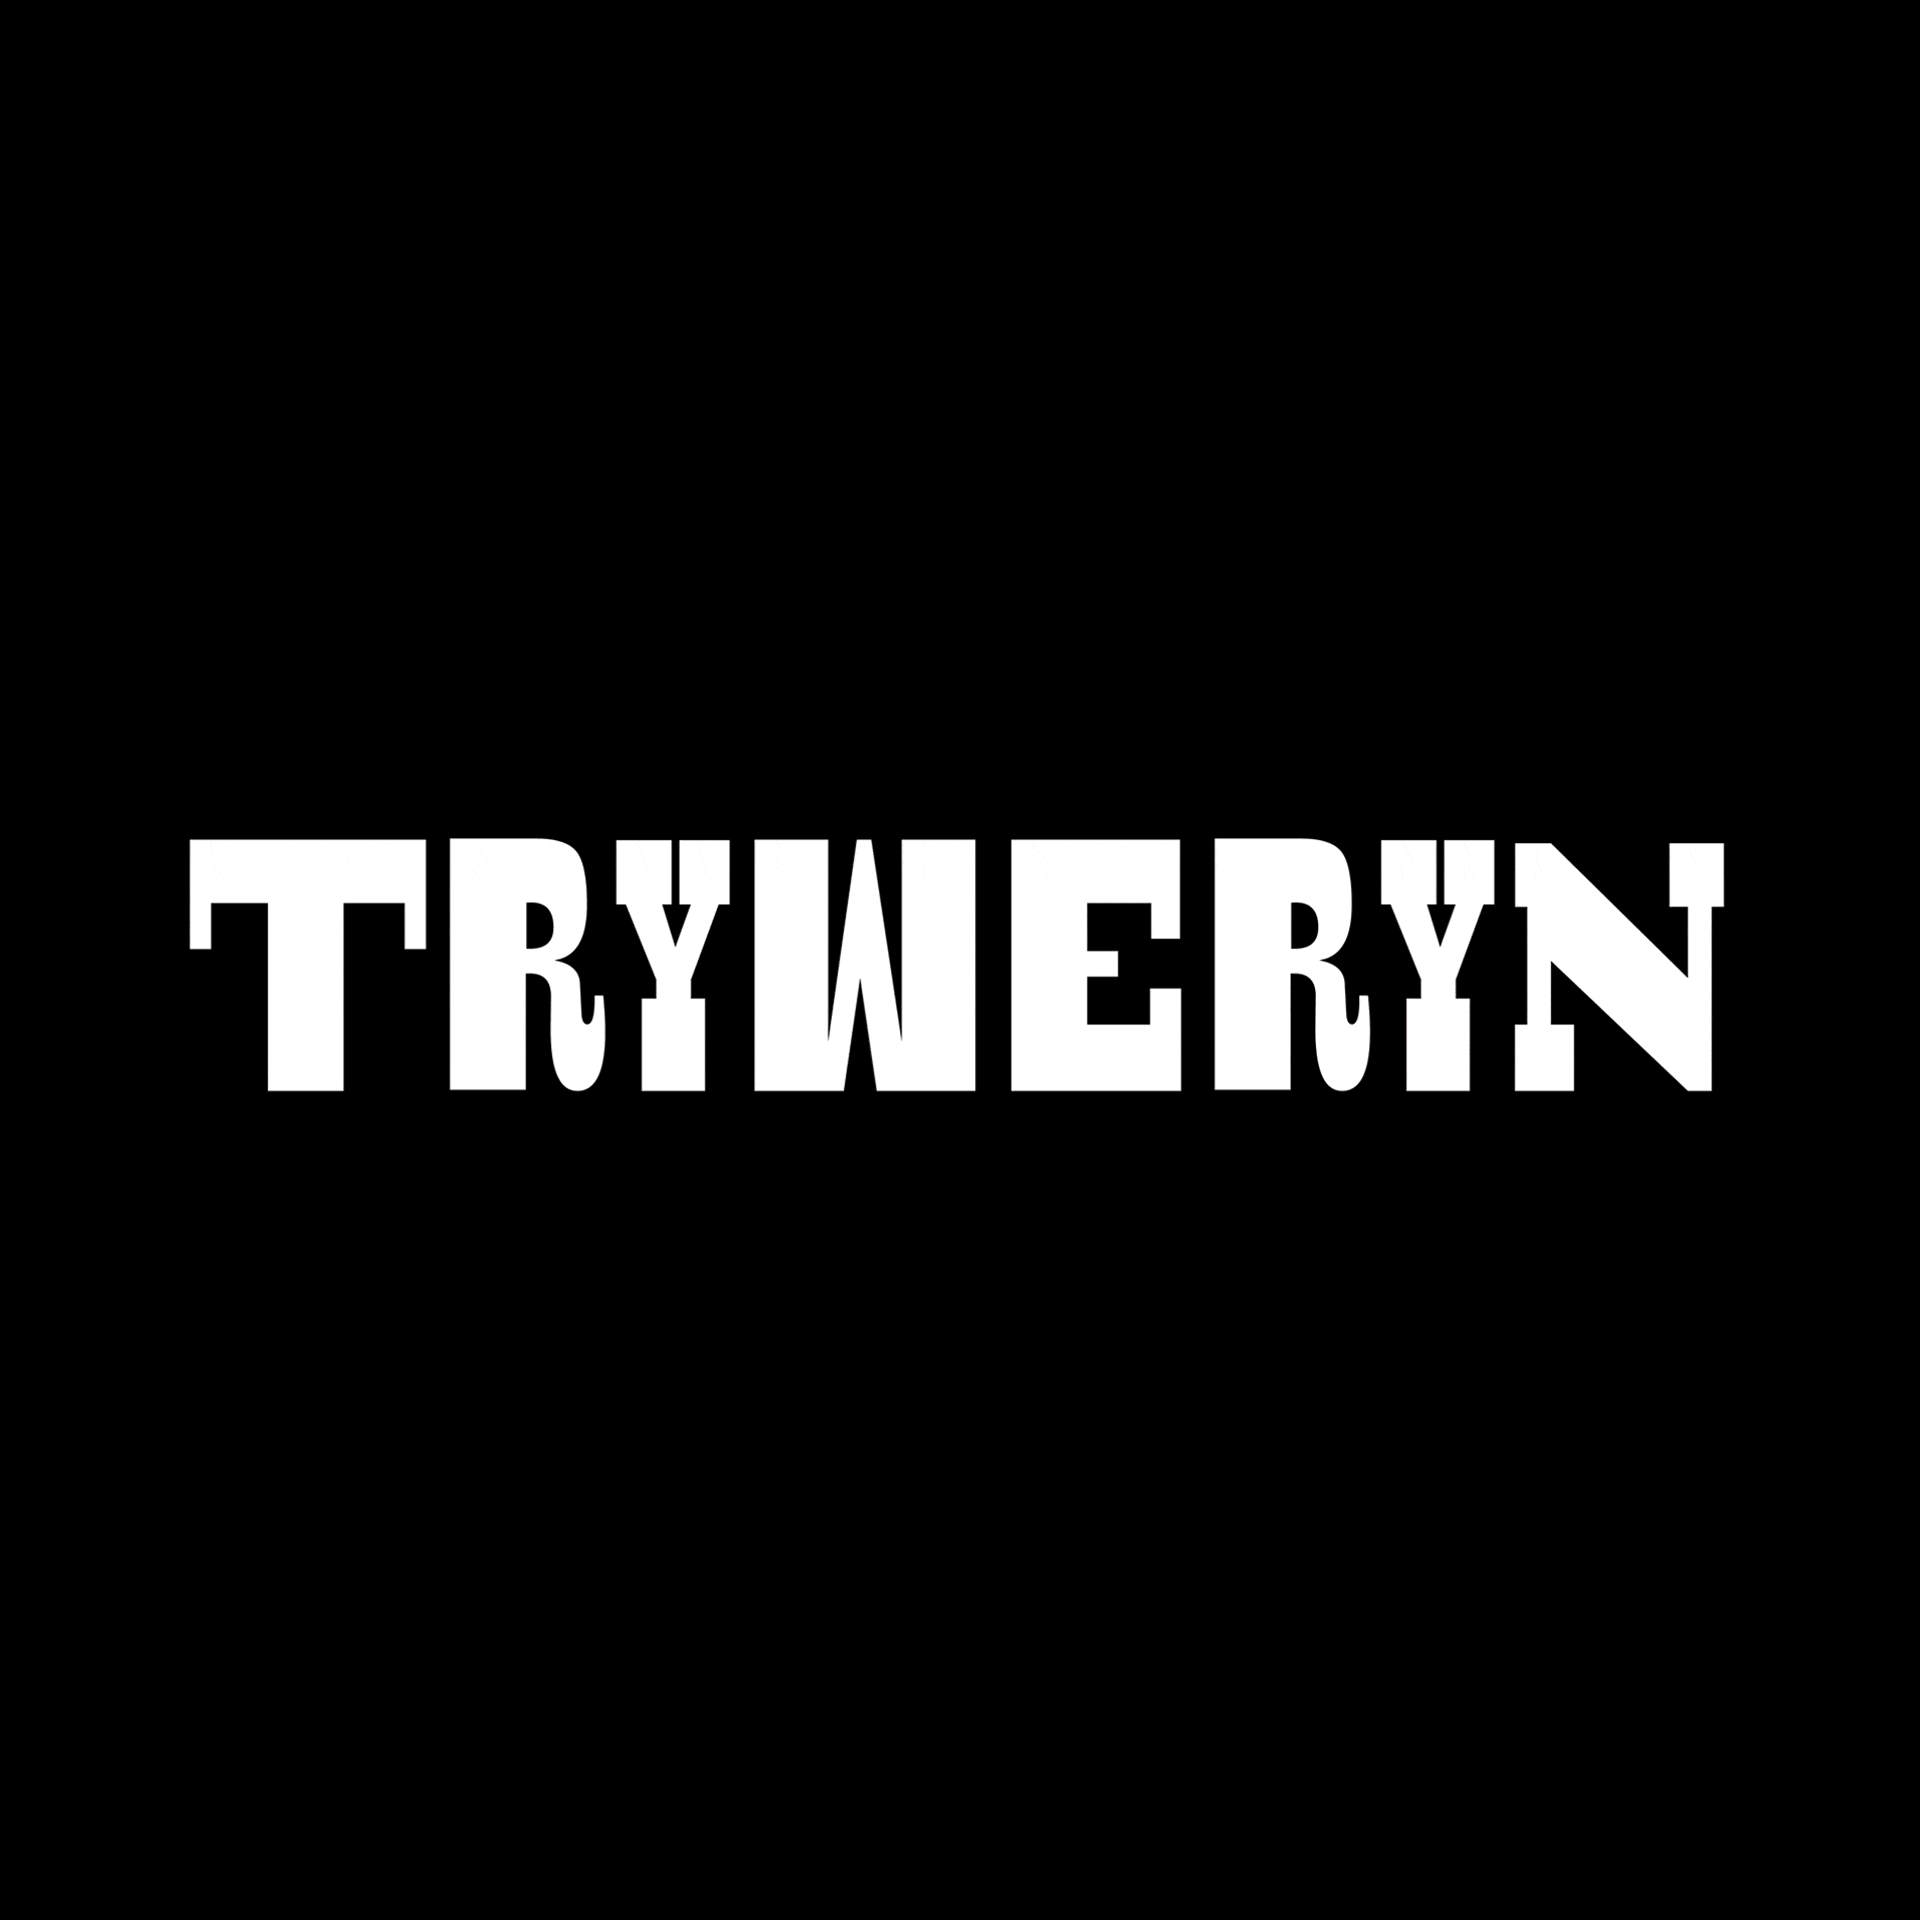 Tryweryn